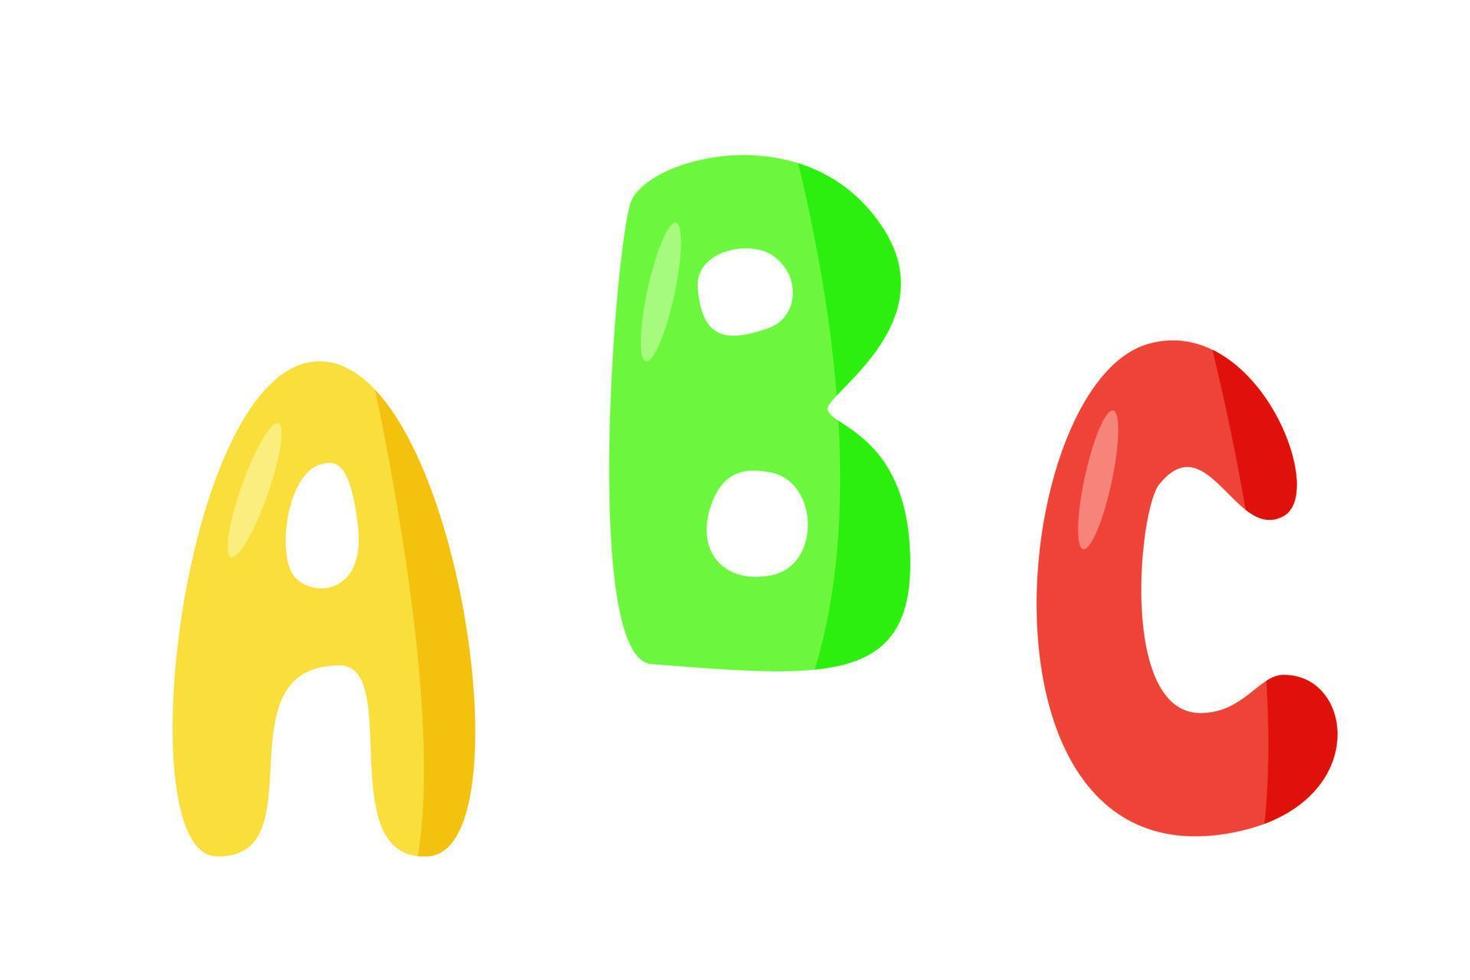 Engelse letters van het abc-alfabet, vectorillustratie van gekleurde letters geïsoleerd op wit, symbolen van de school voor onderwijs vector